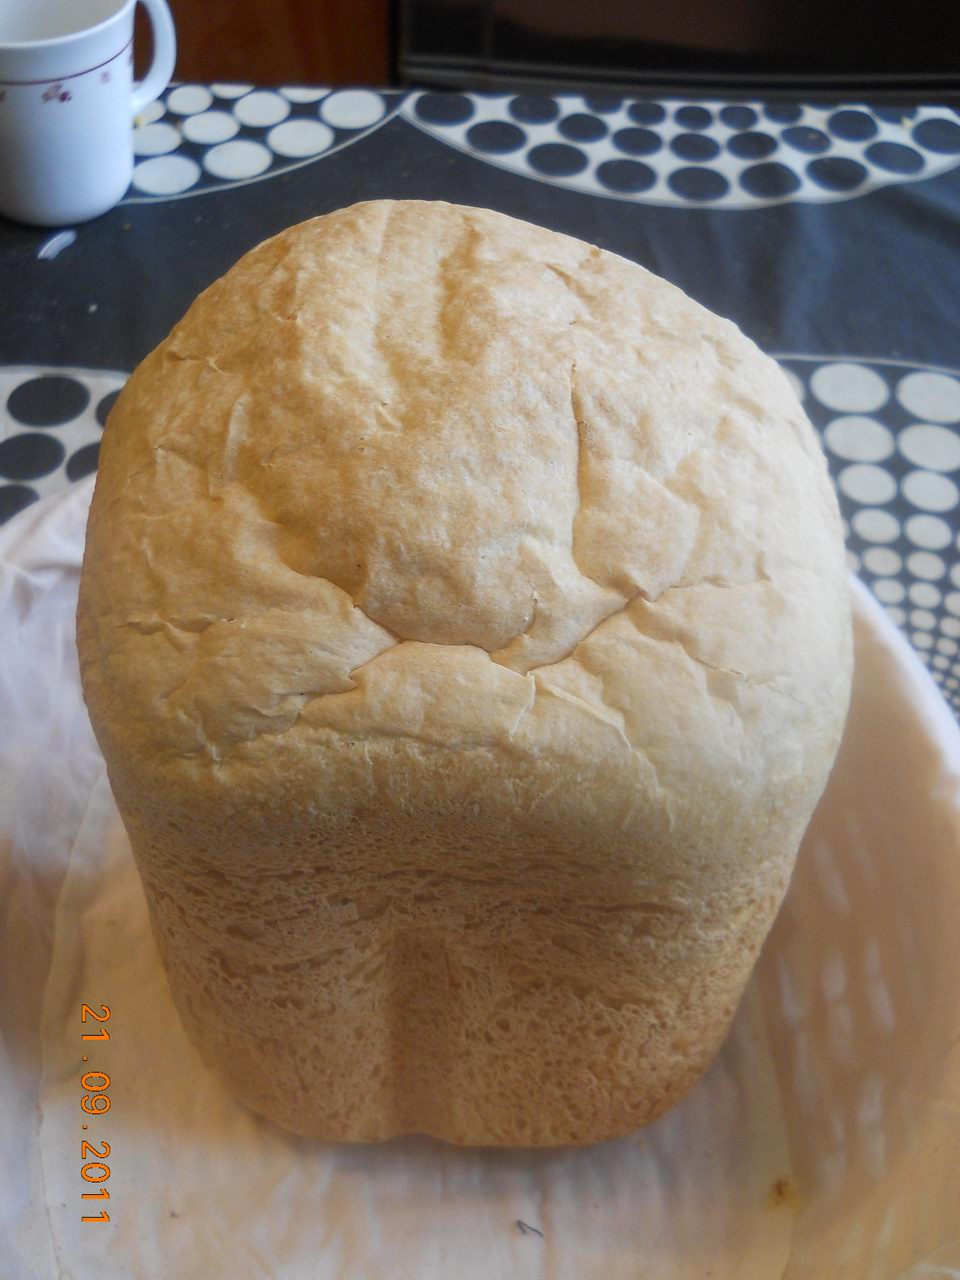 Breadmaker temperature